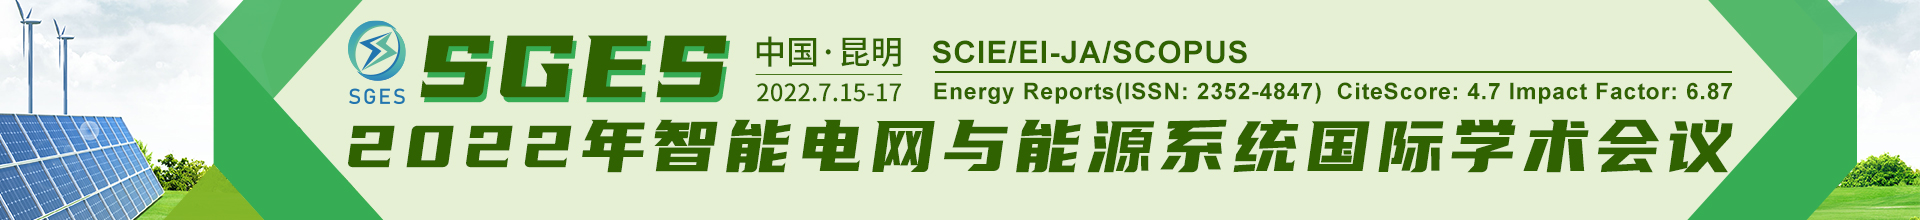 7月昆明-SGES-2022-学术会议云PC端1920x220-陈军-20211230.jpg